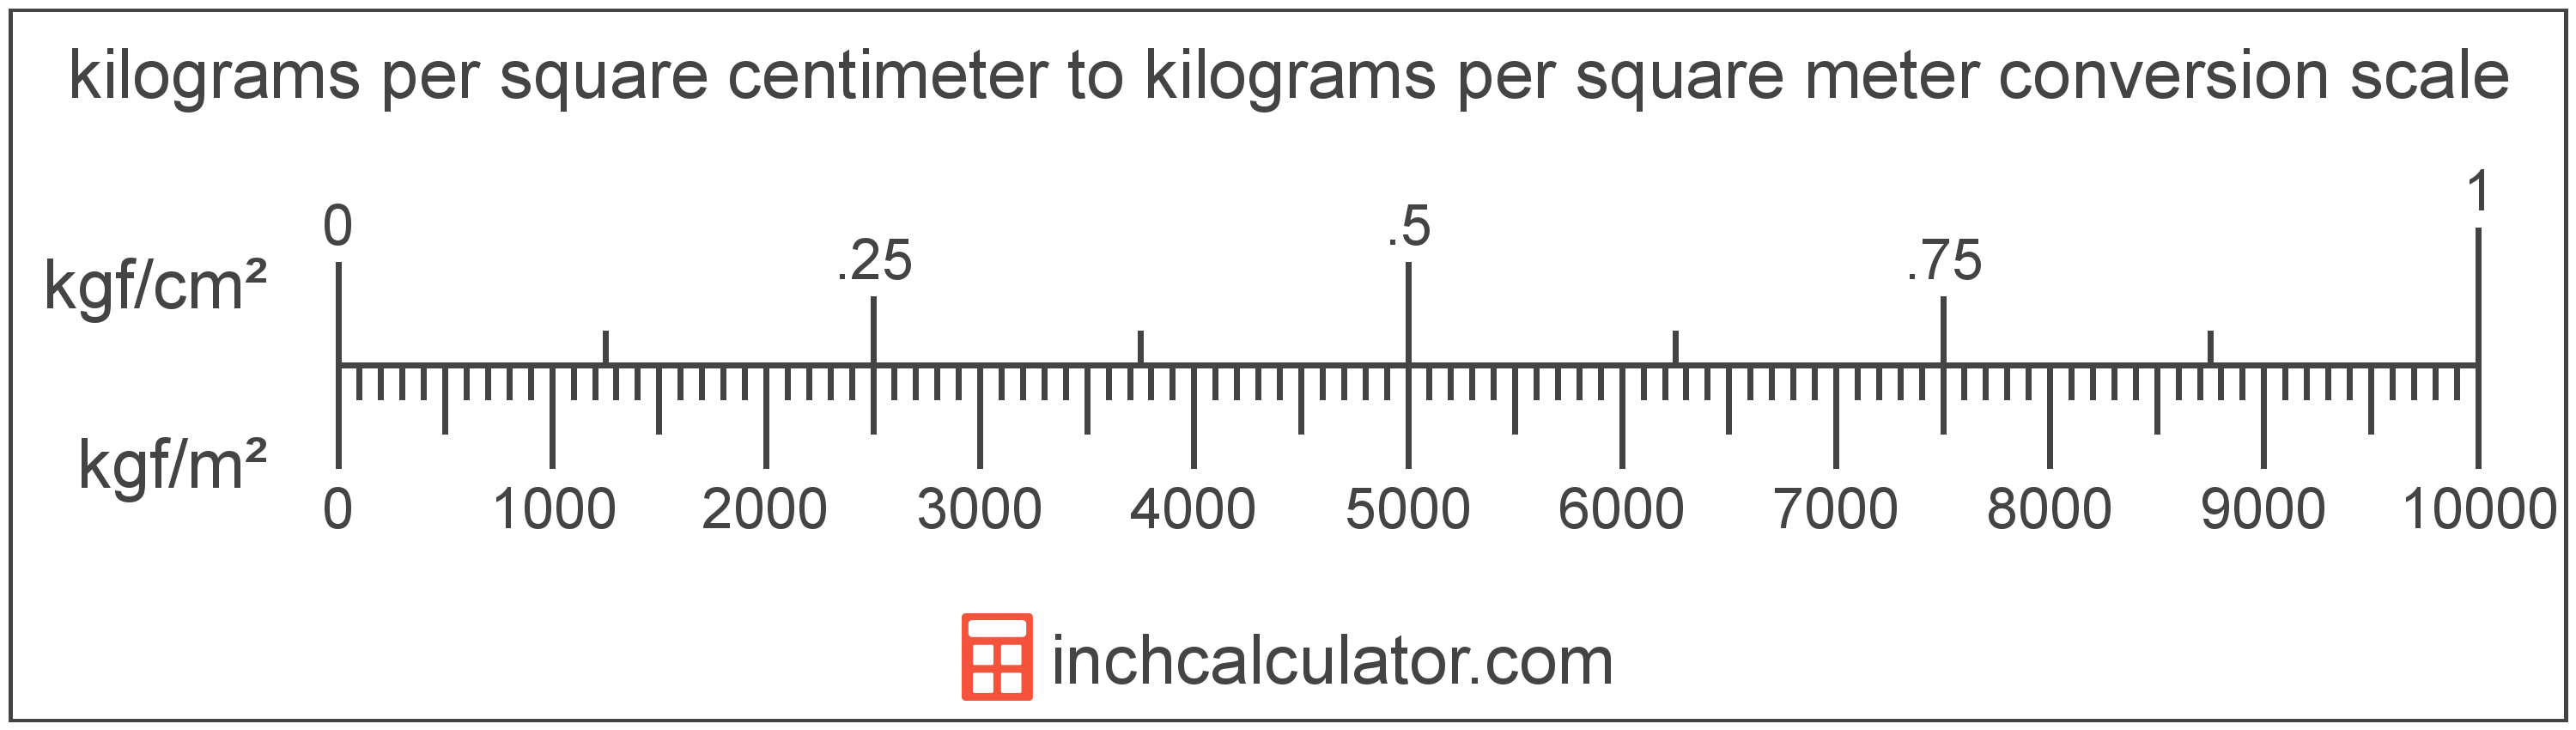 conversion scale showing kilograms per square centimeter and equivalent kilograms per square meter pressure values